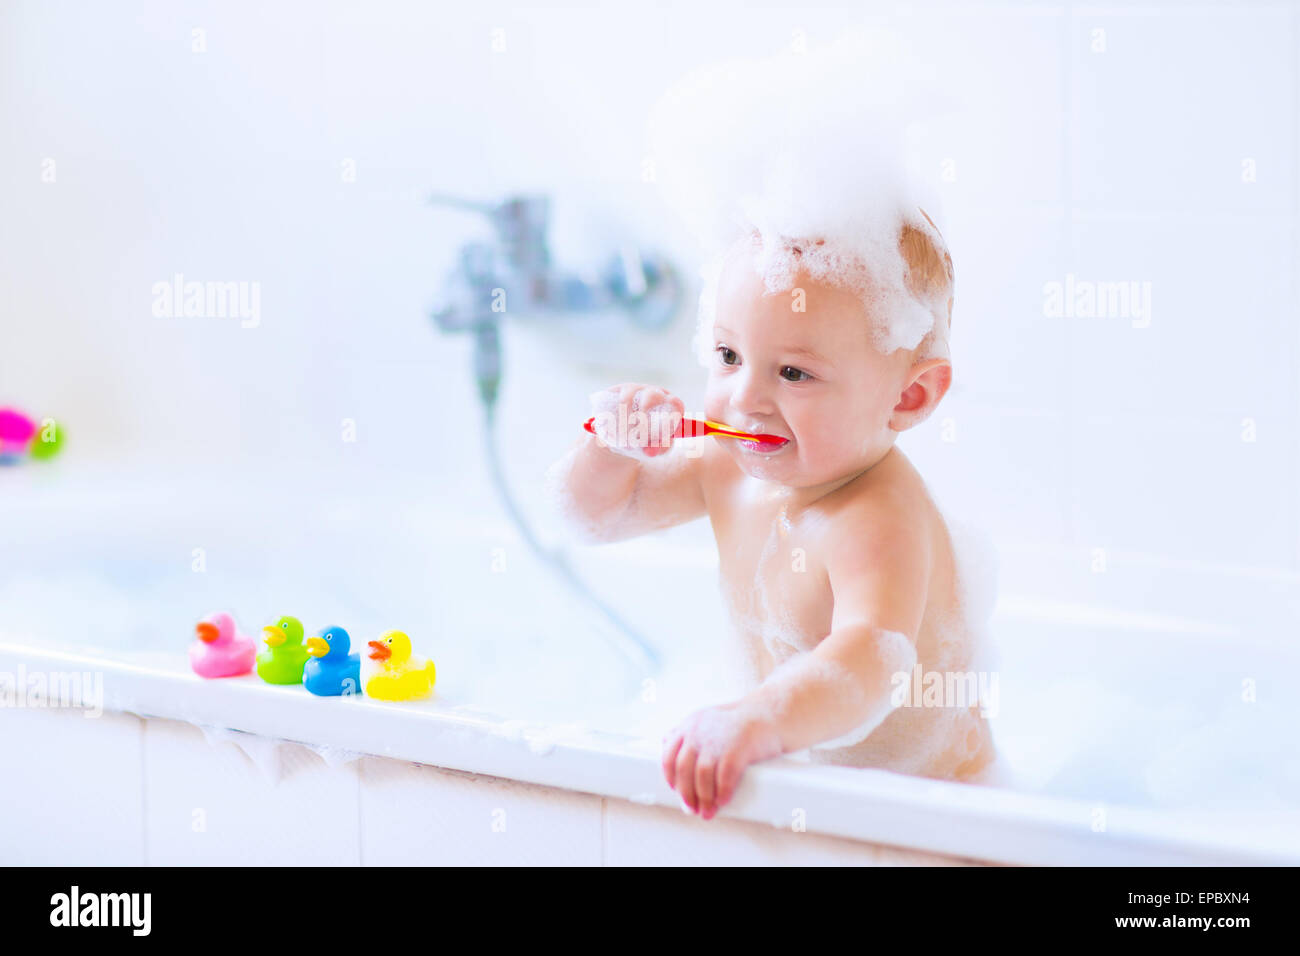 Niedlichen kleinen Jungen seine Zähne putzen, spielen mit Schaum und bunte Kautschuk Ente Spielzeug in einem weißen sonnigen Bad Bad Stockfoto